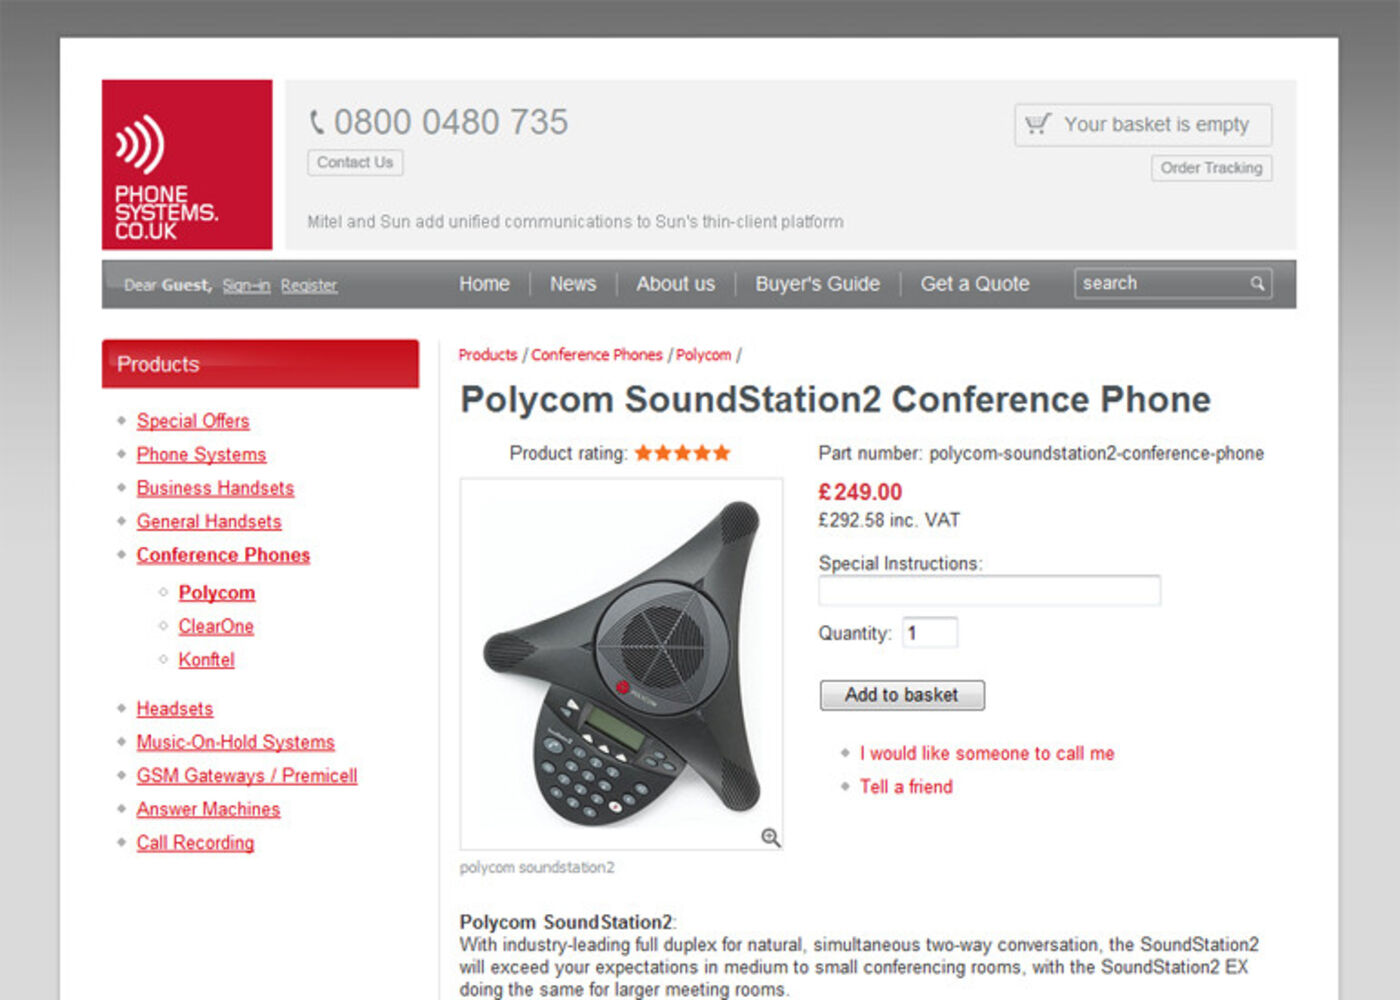 Phonesystems.co.uk Product